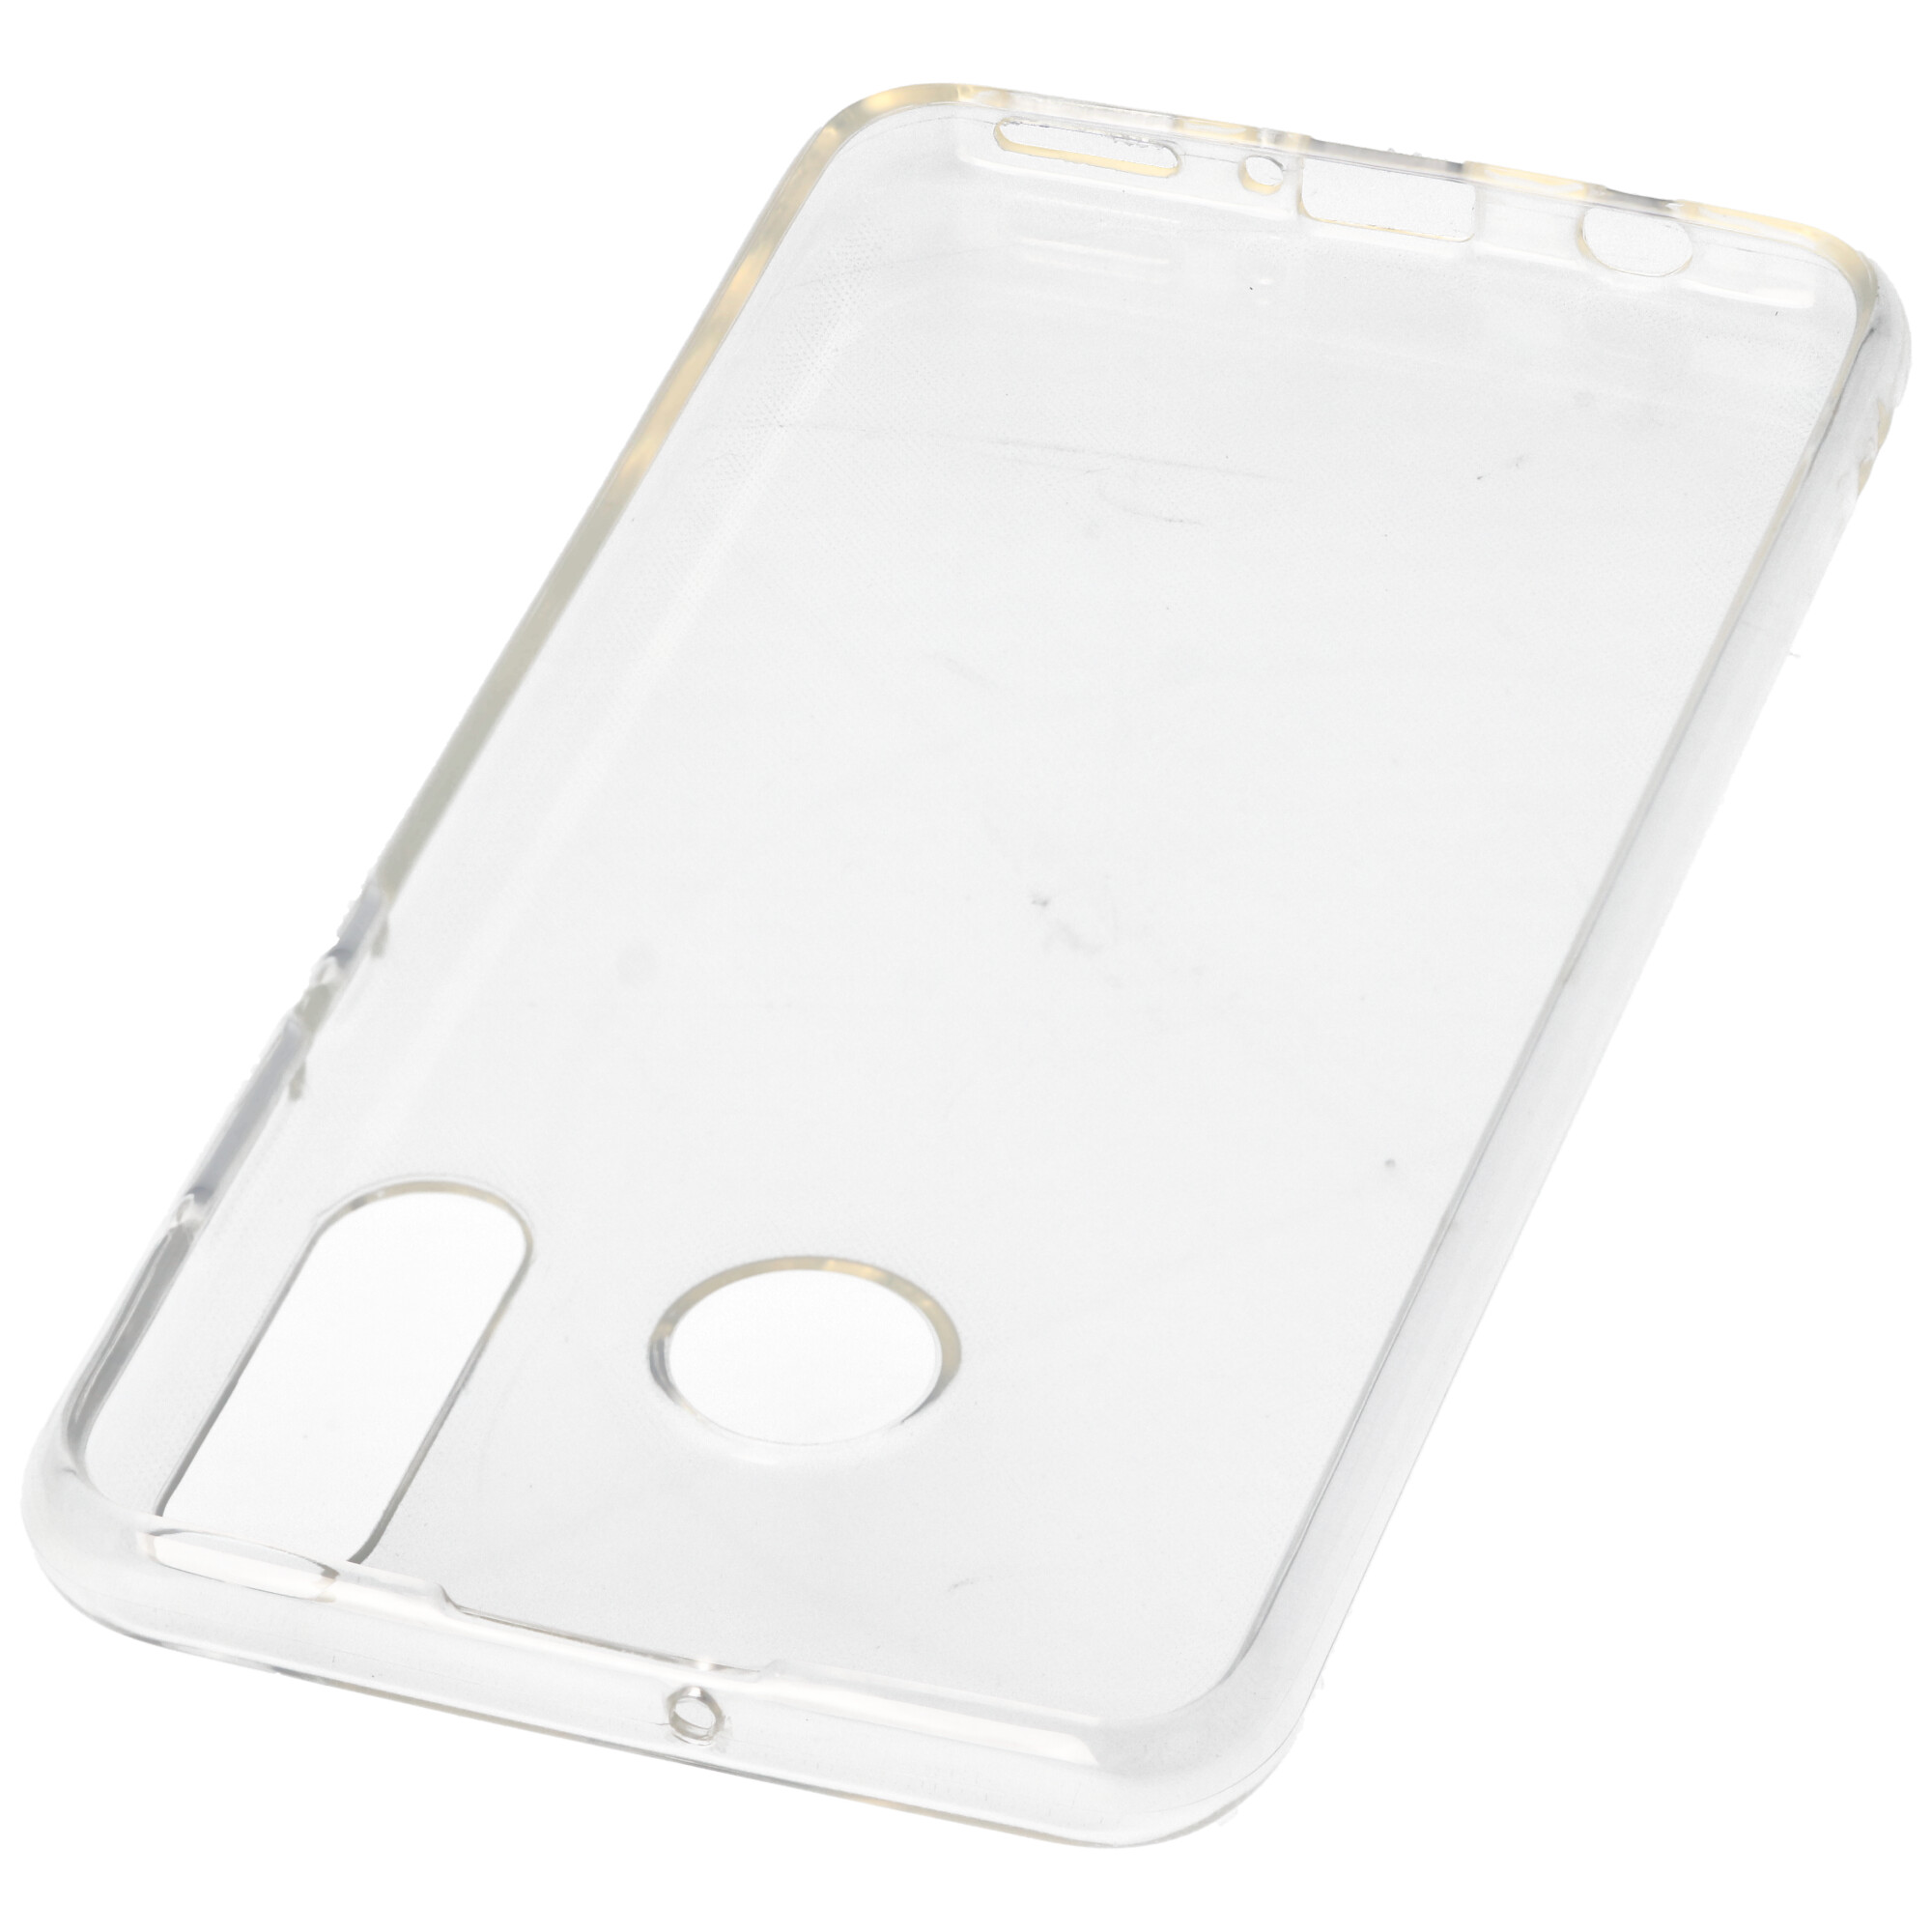 Hülle passend für Huawei P30 Lite - transparente Schutzhülle, Anti-Gelb Luftkissen Fallschutz Silikon Handyhülle robustes TPU Case